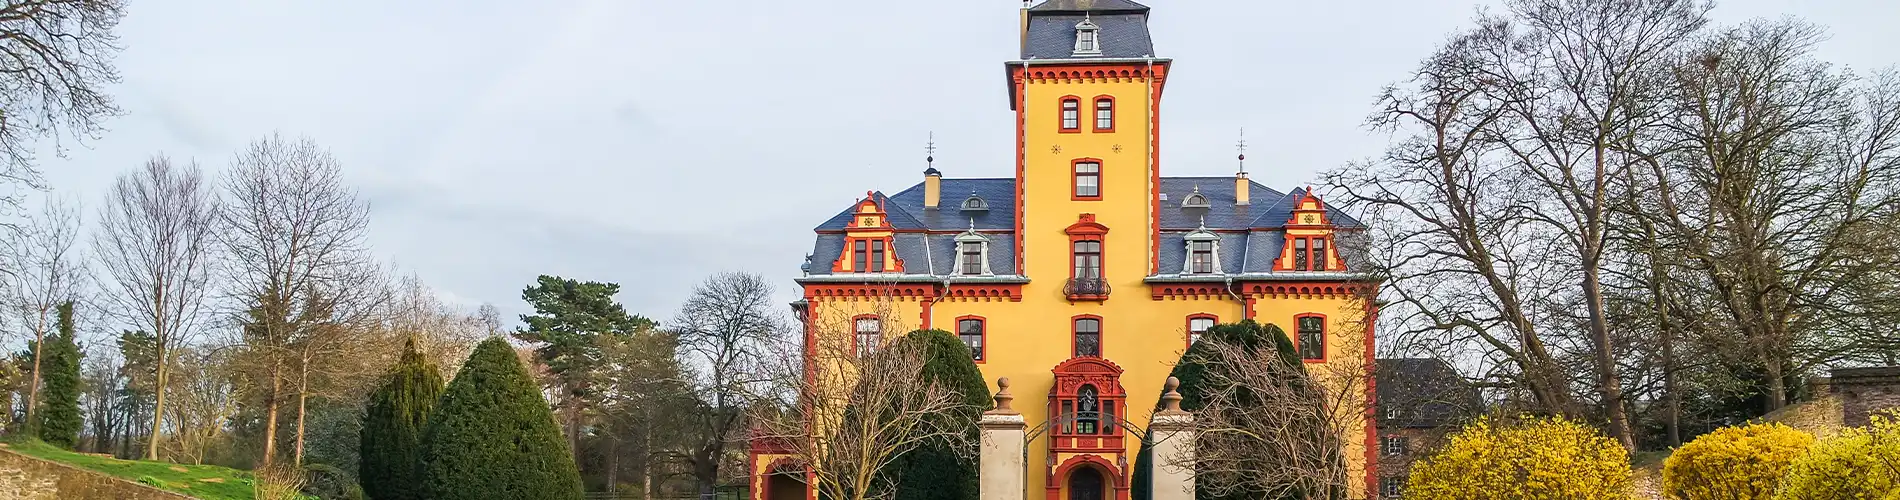 Schloss Wachendorf | Stadt Mechernich